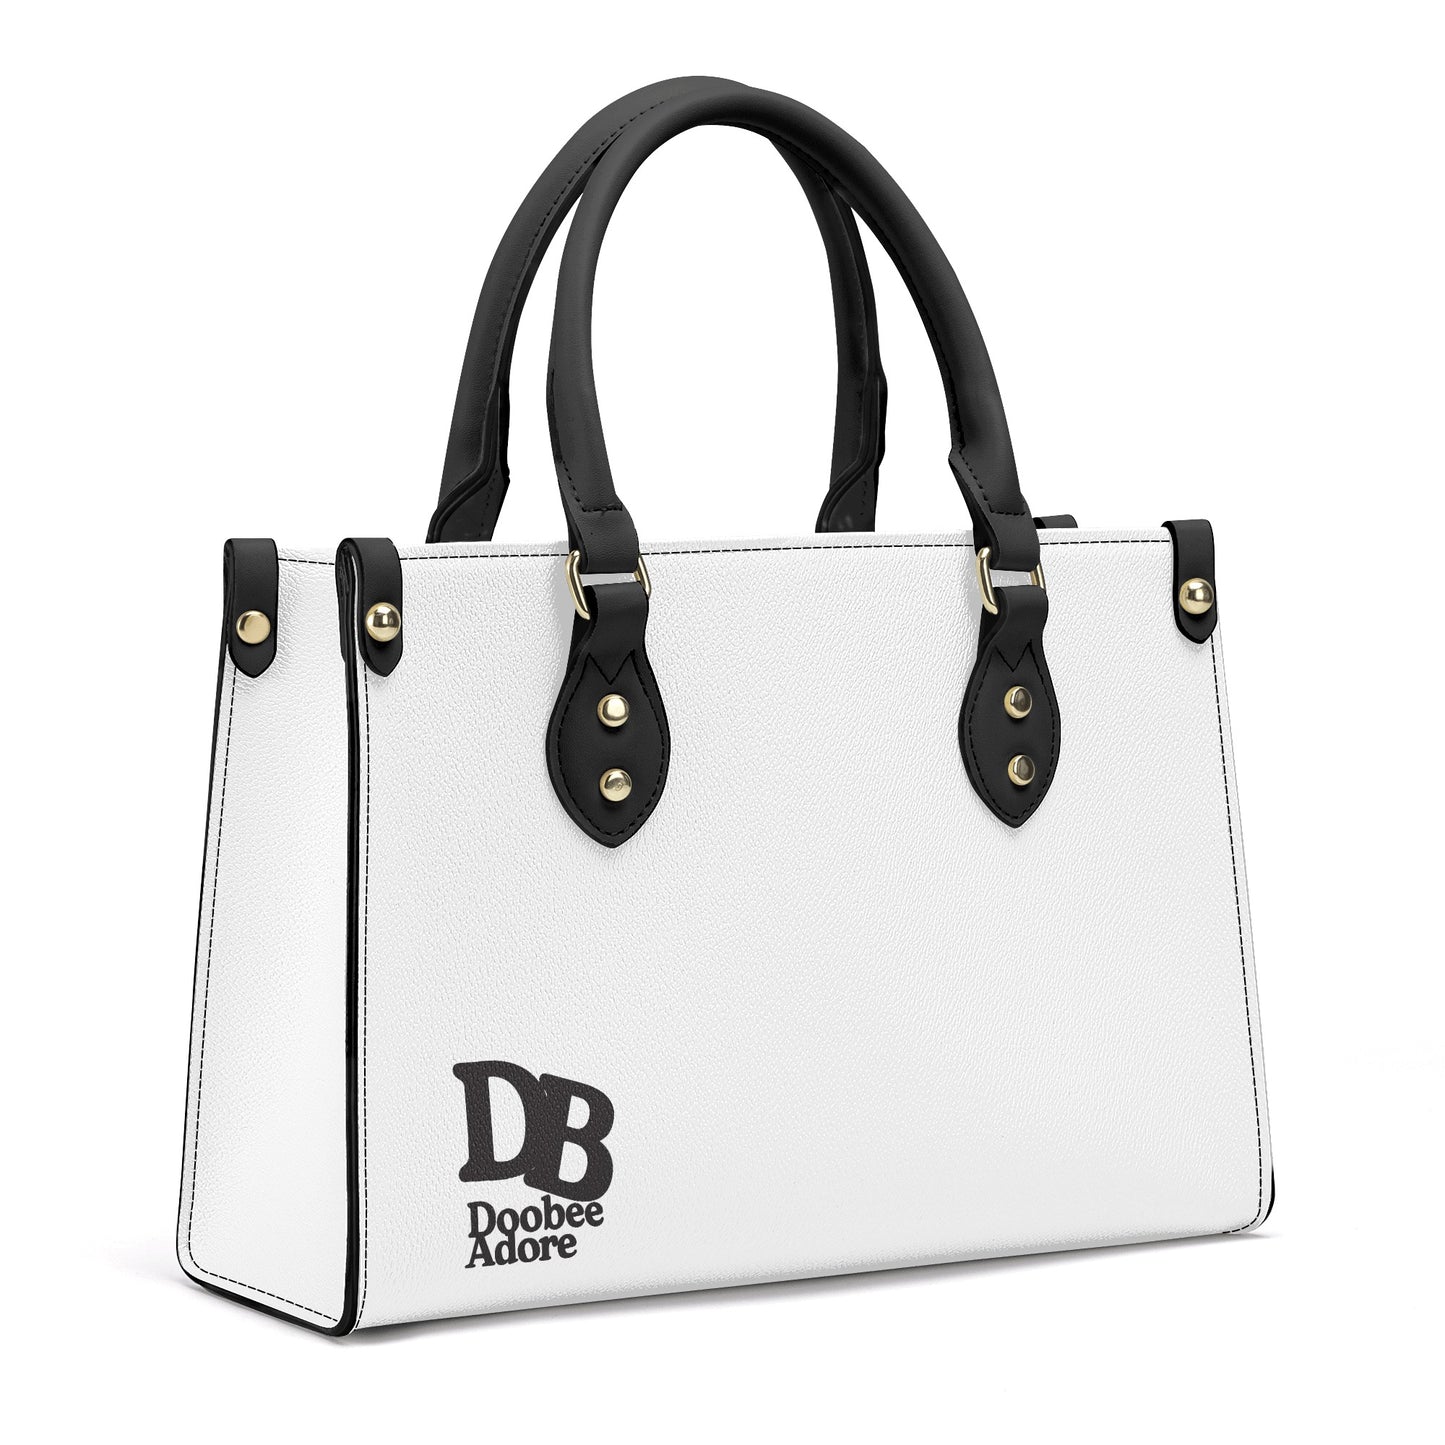 Doobee Adore Luxury Women PU Tote Bag